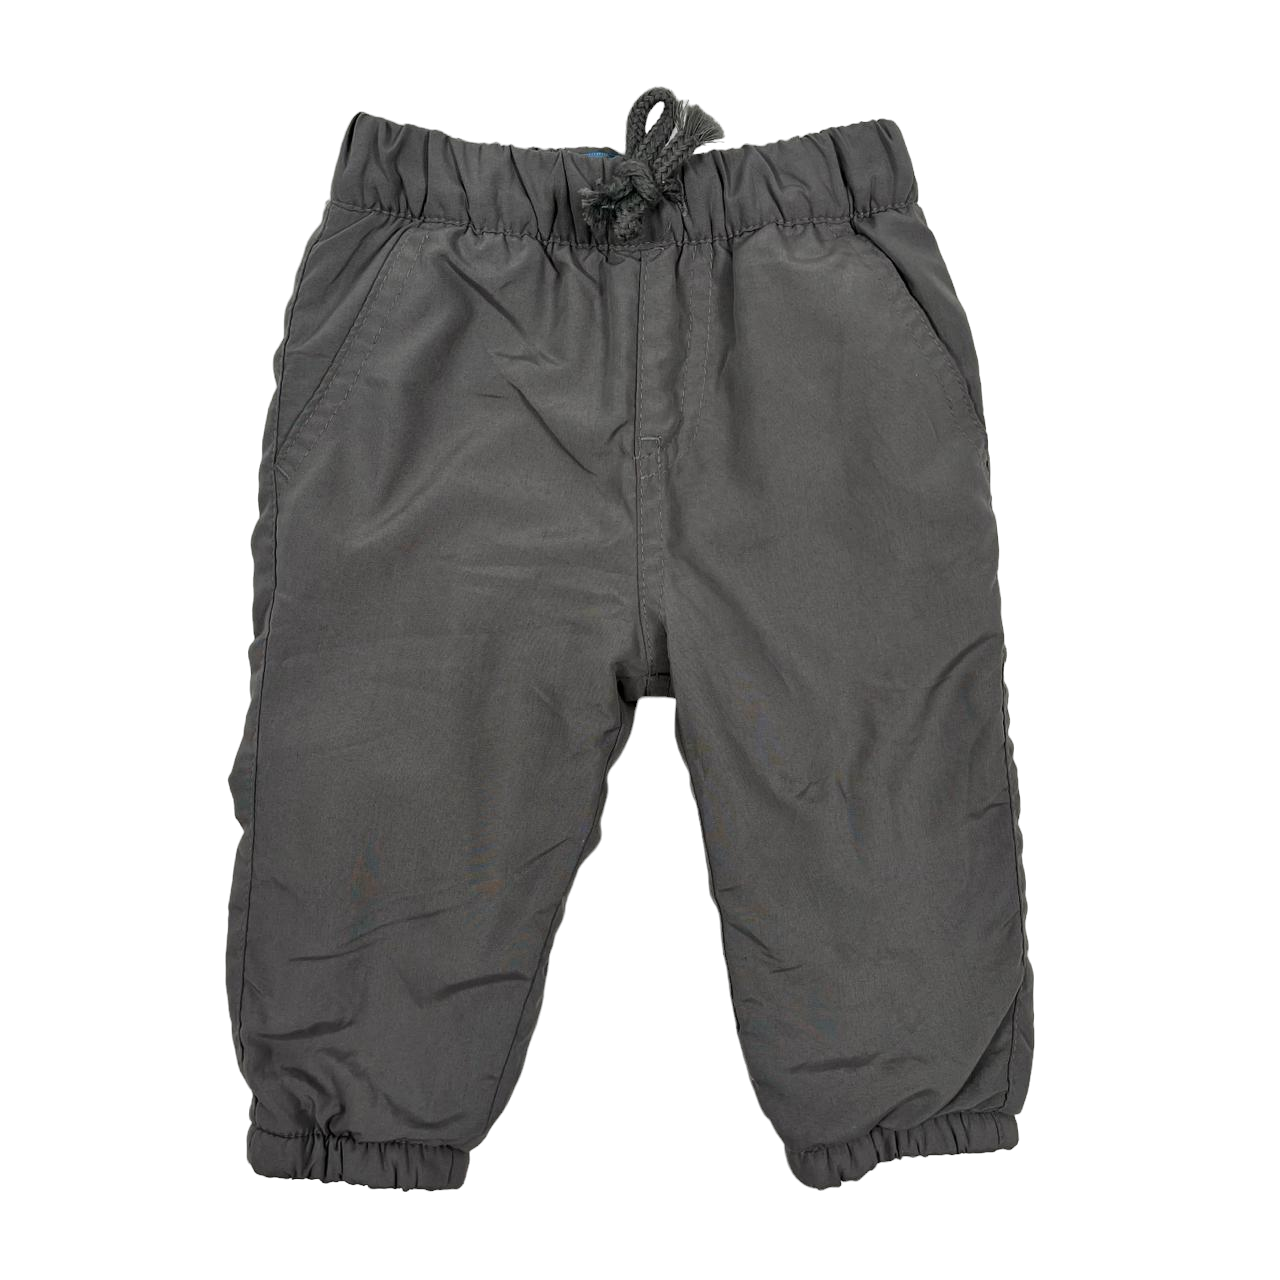 Pantalon forrado gris termico con pretina ajustable y puños